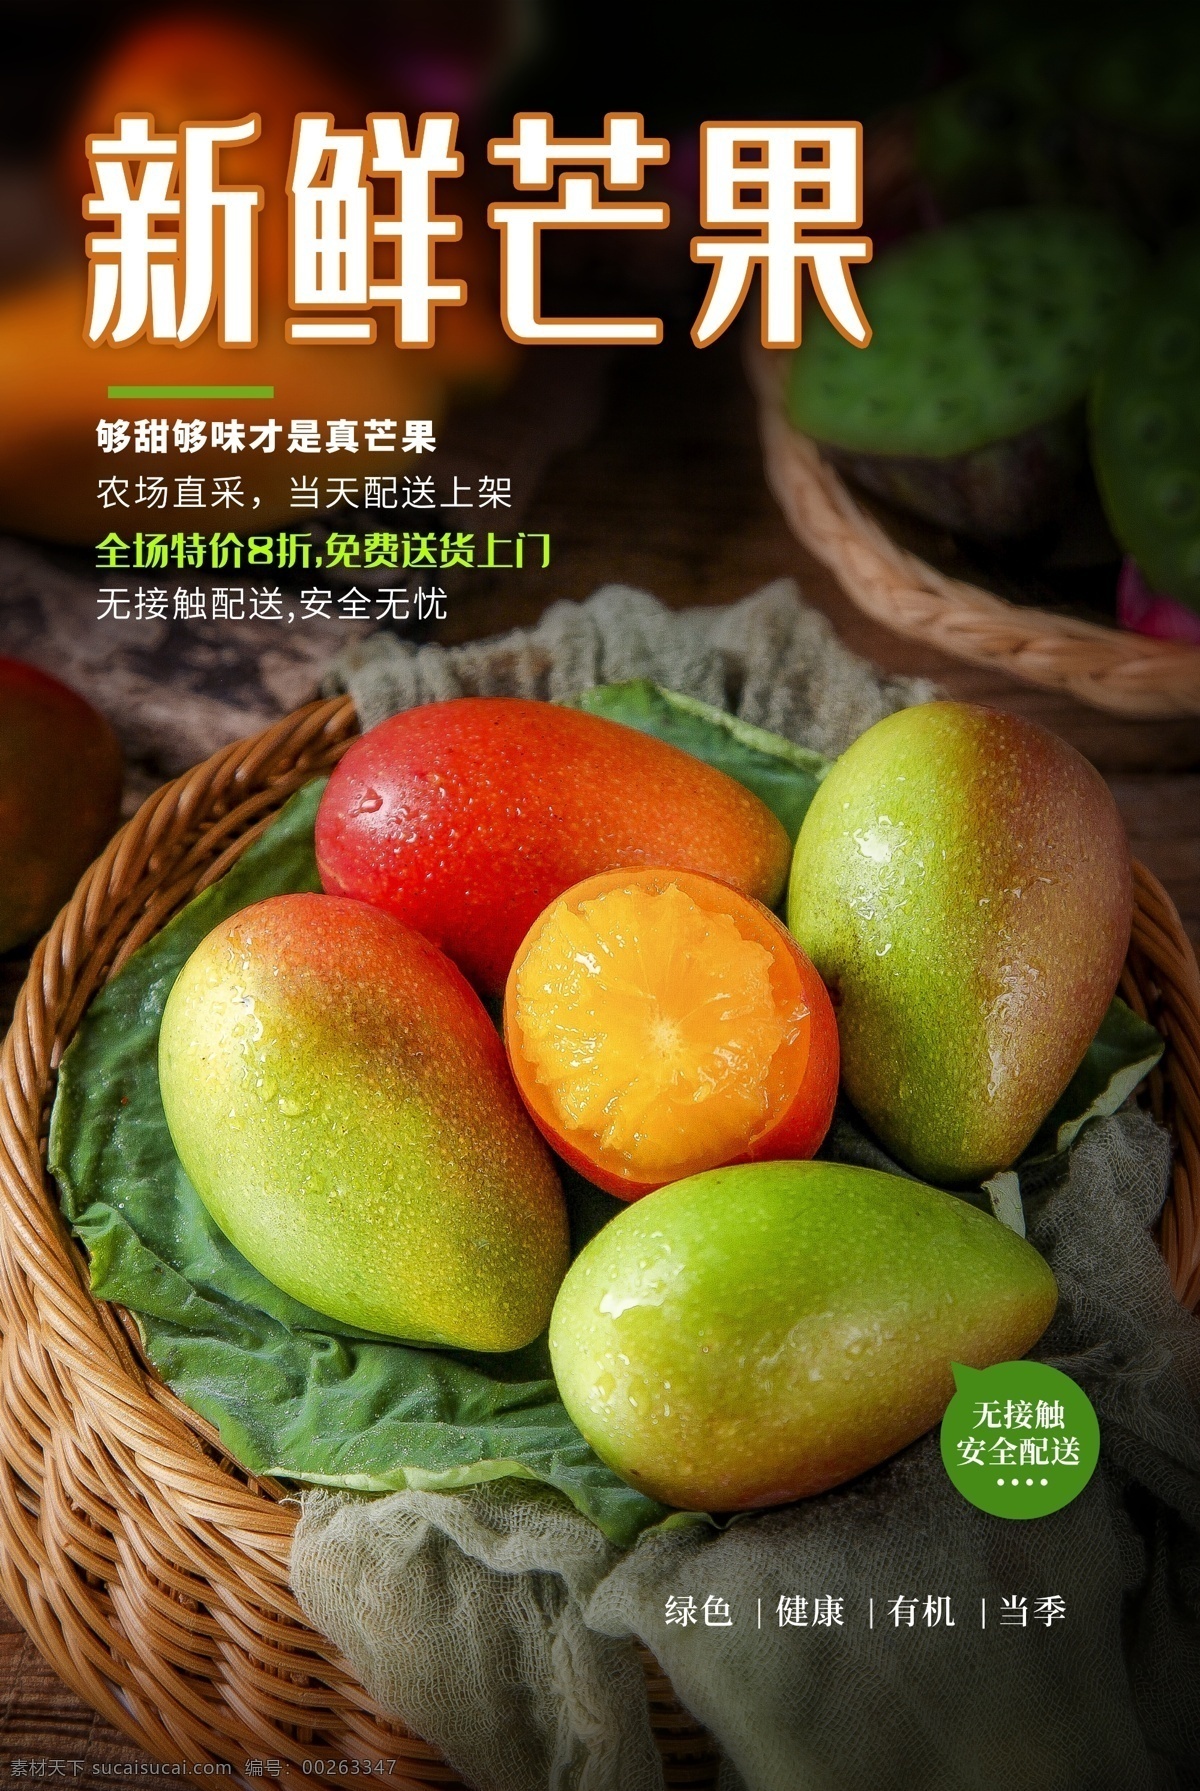 新鲜 芒果 水果 活动 海报 素材图片 新鲜芒果 餐饮美食 类